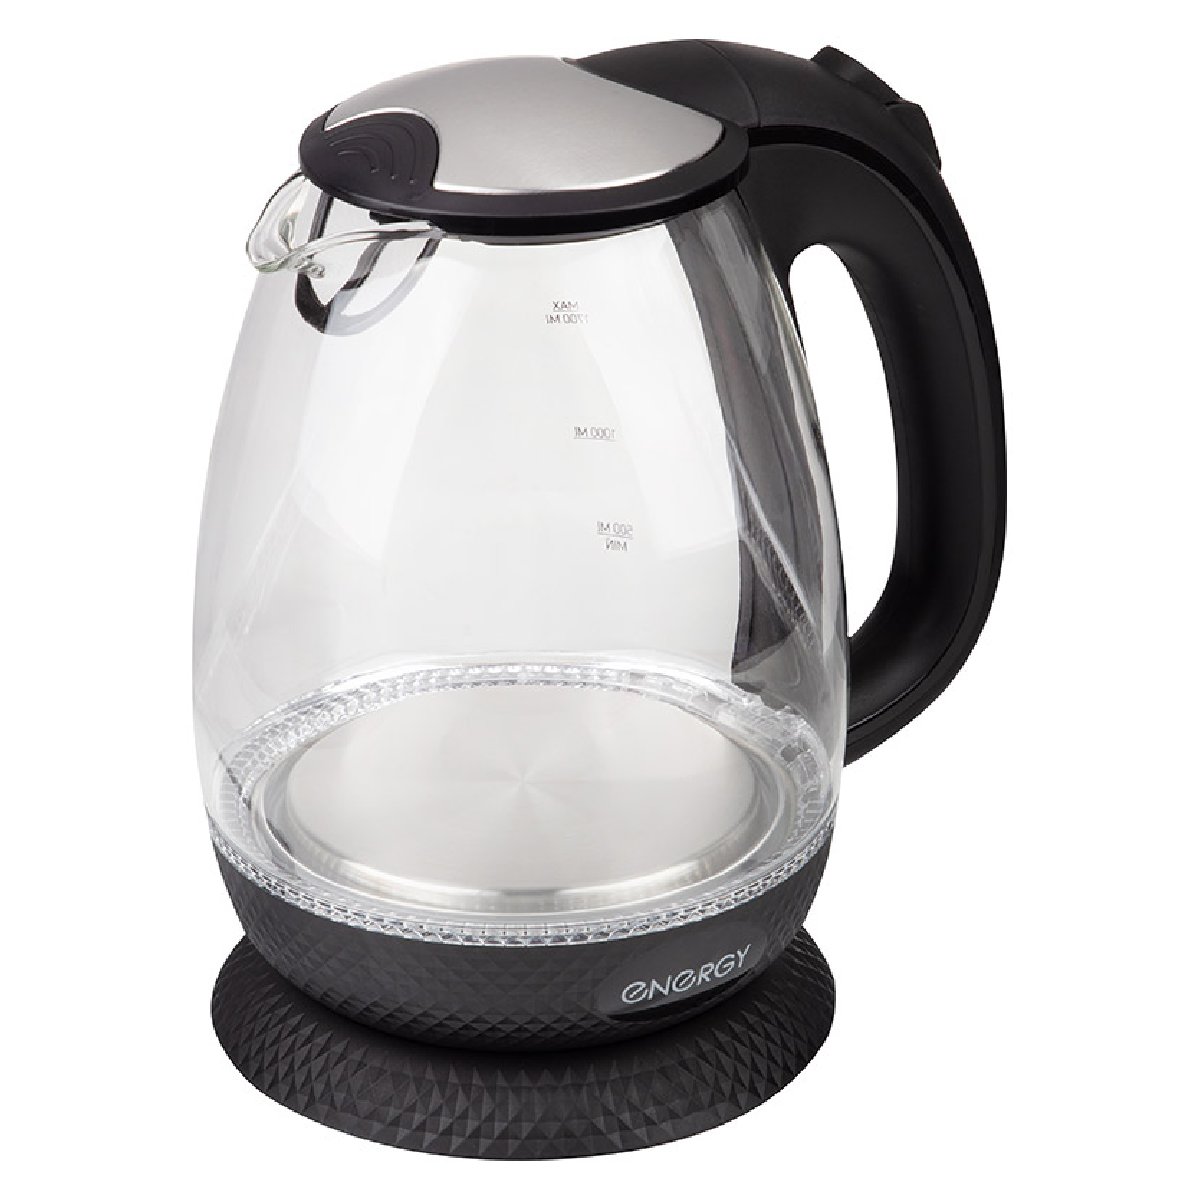 Чайник ENERGY E-250 (1,7 л) стекло, пластик цвет черный (007122)